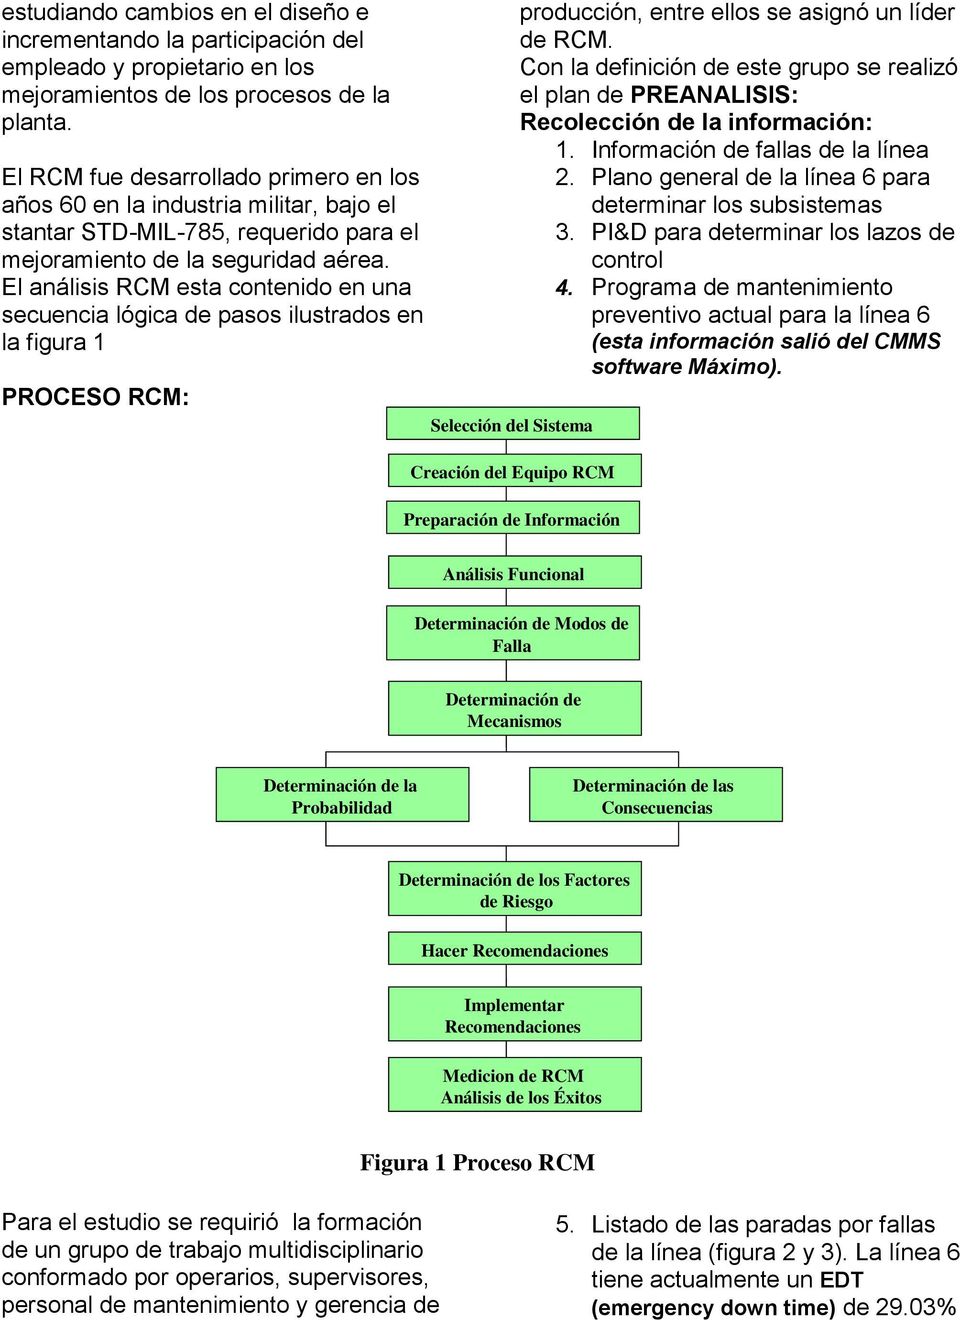 El análisis RCM esta contenido en una secuencia lógica de pasos ilustrados en la figura 1 PROCESO RCM: Selección del Sistema Creación del Equipo RCM Preparación de Información producción, entre ellos